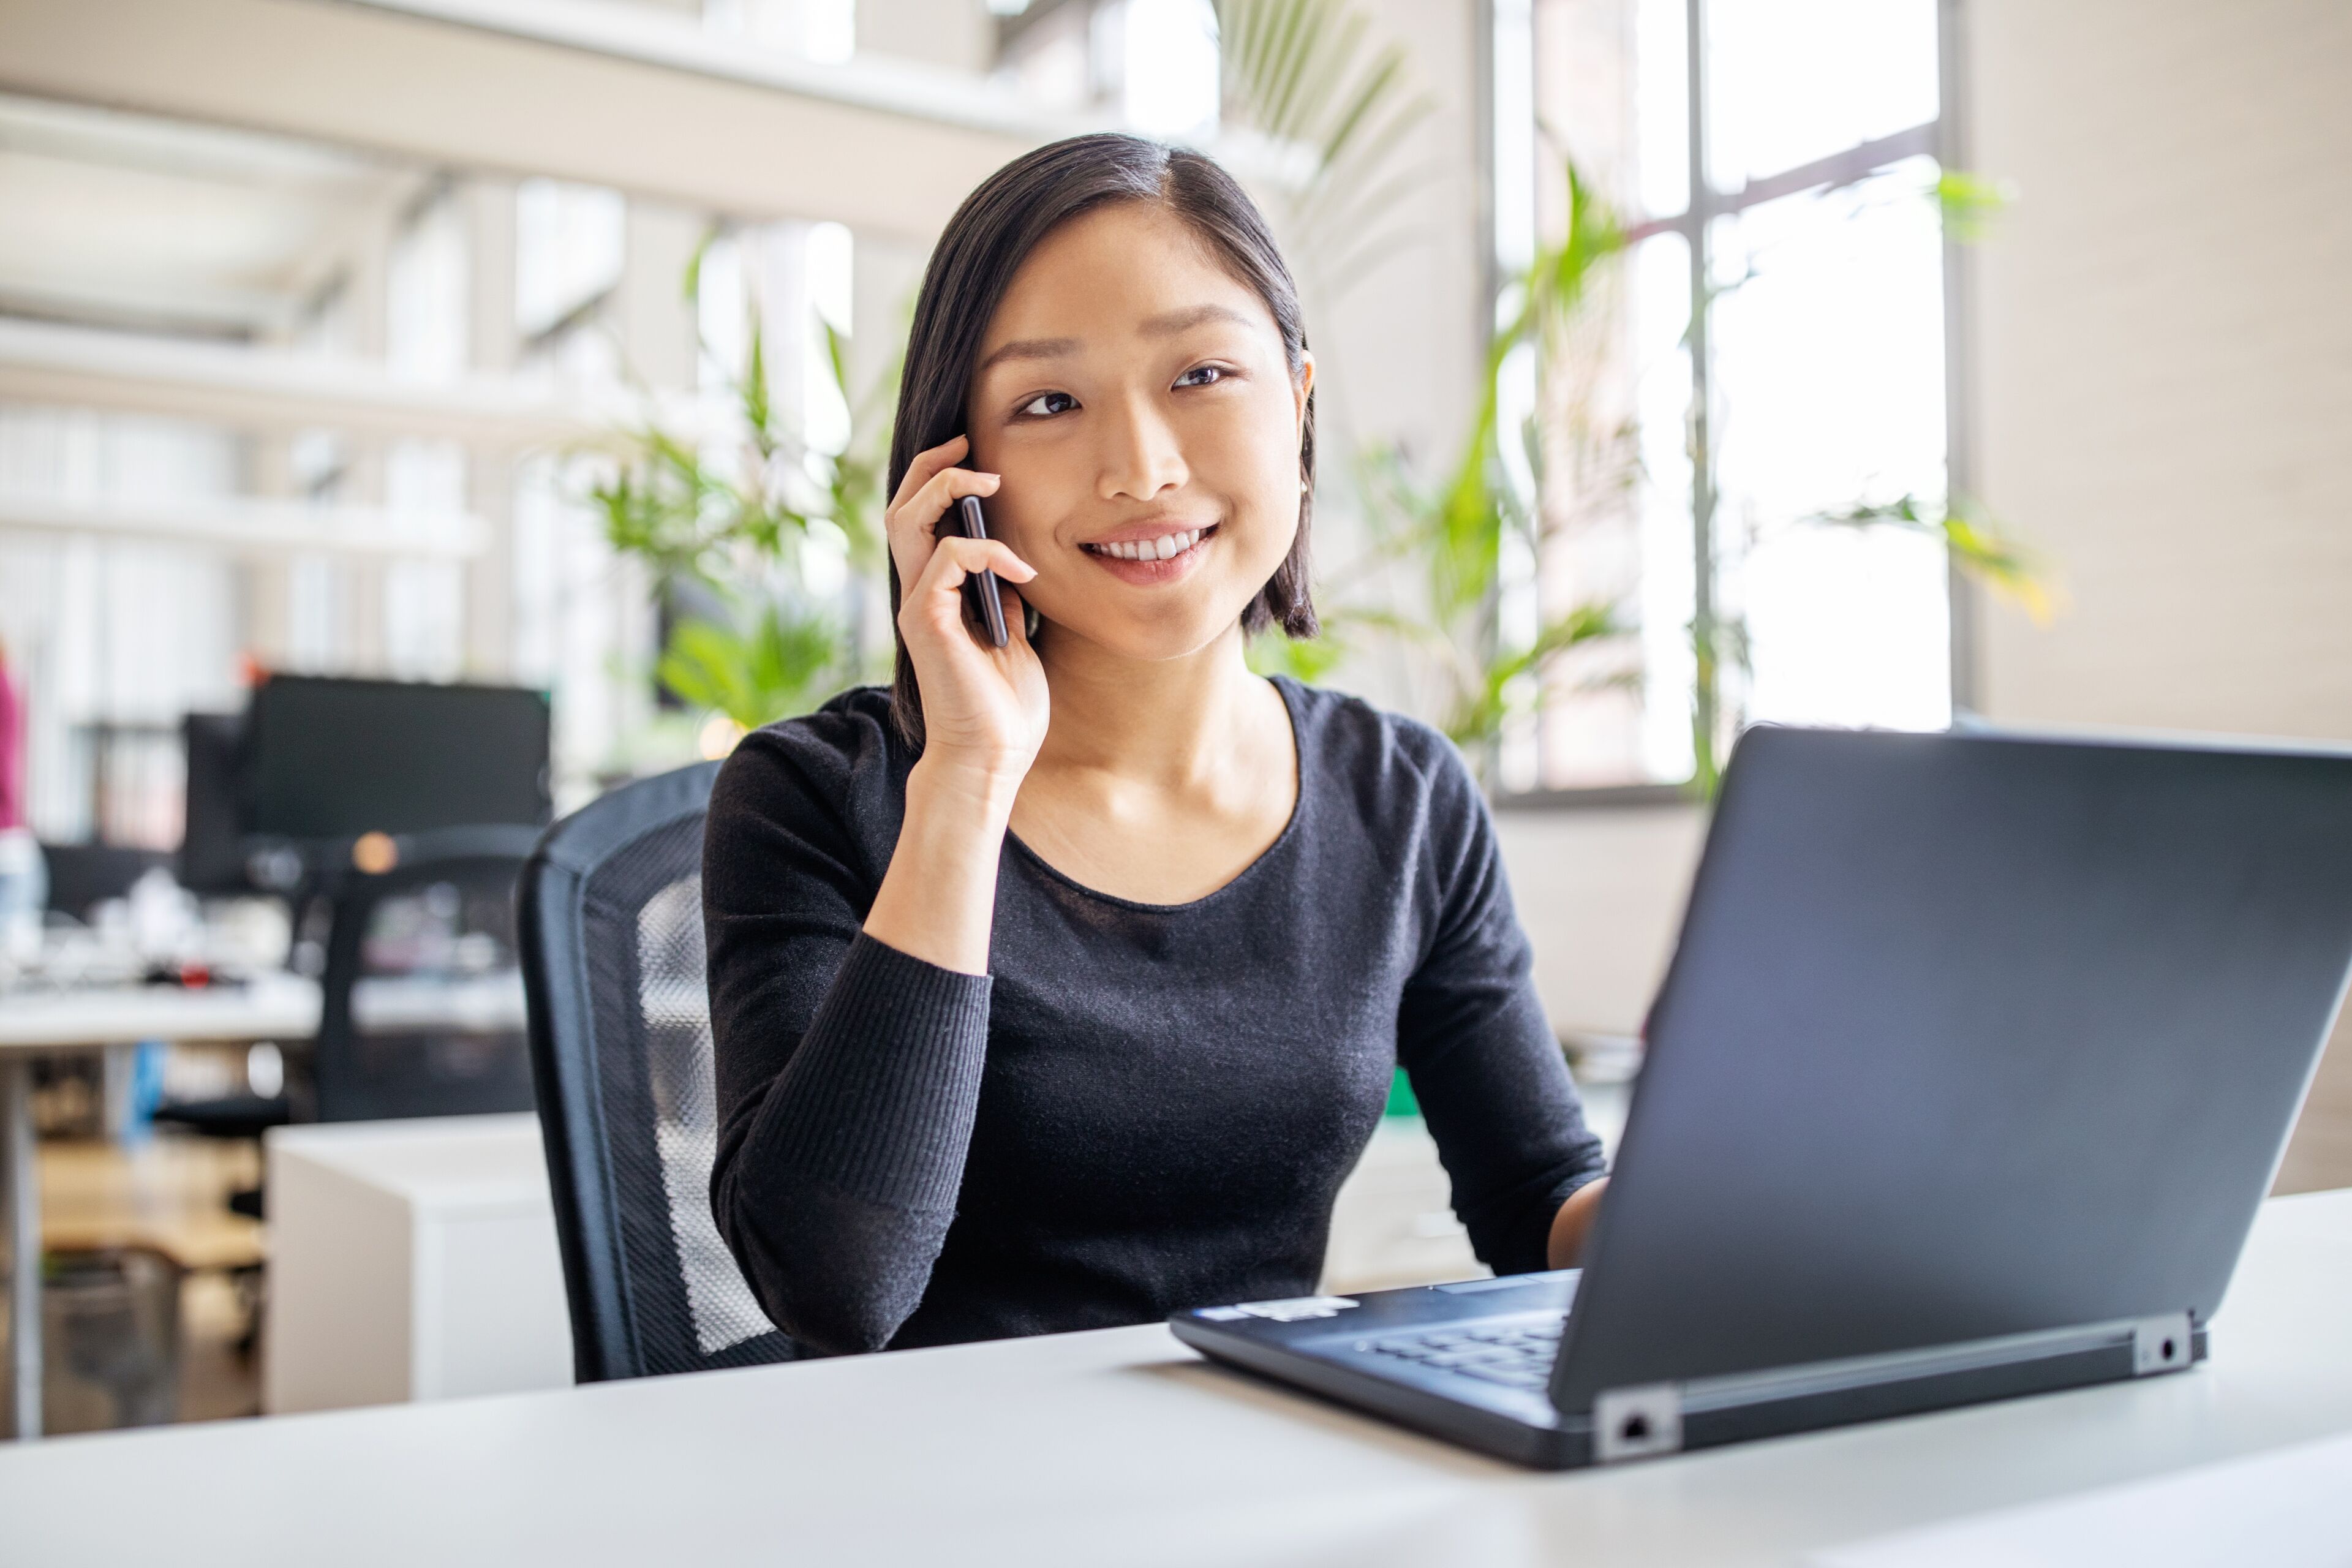 Une jeune femme professionnelle sourit pendant qu'elle parle au téléphone, assise à son bureau avec un ordinateur portable ouvert dans un bureau lumineux.